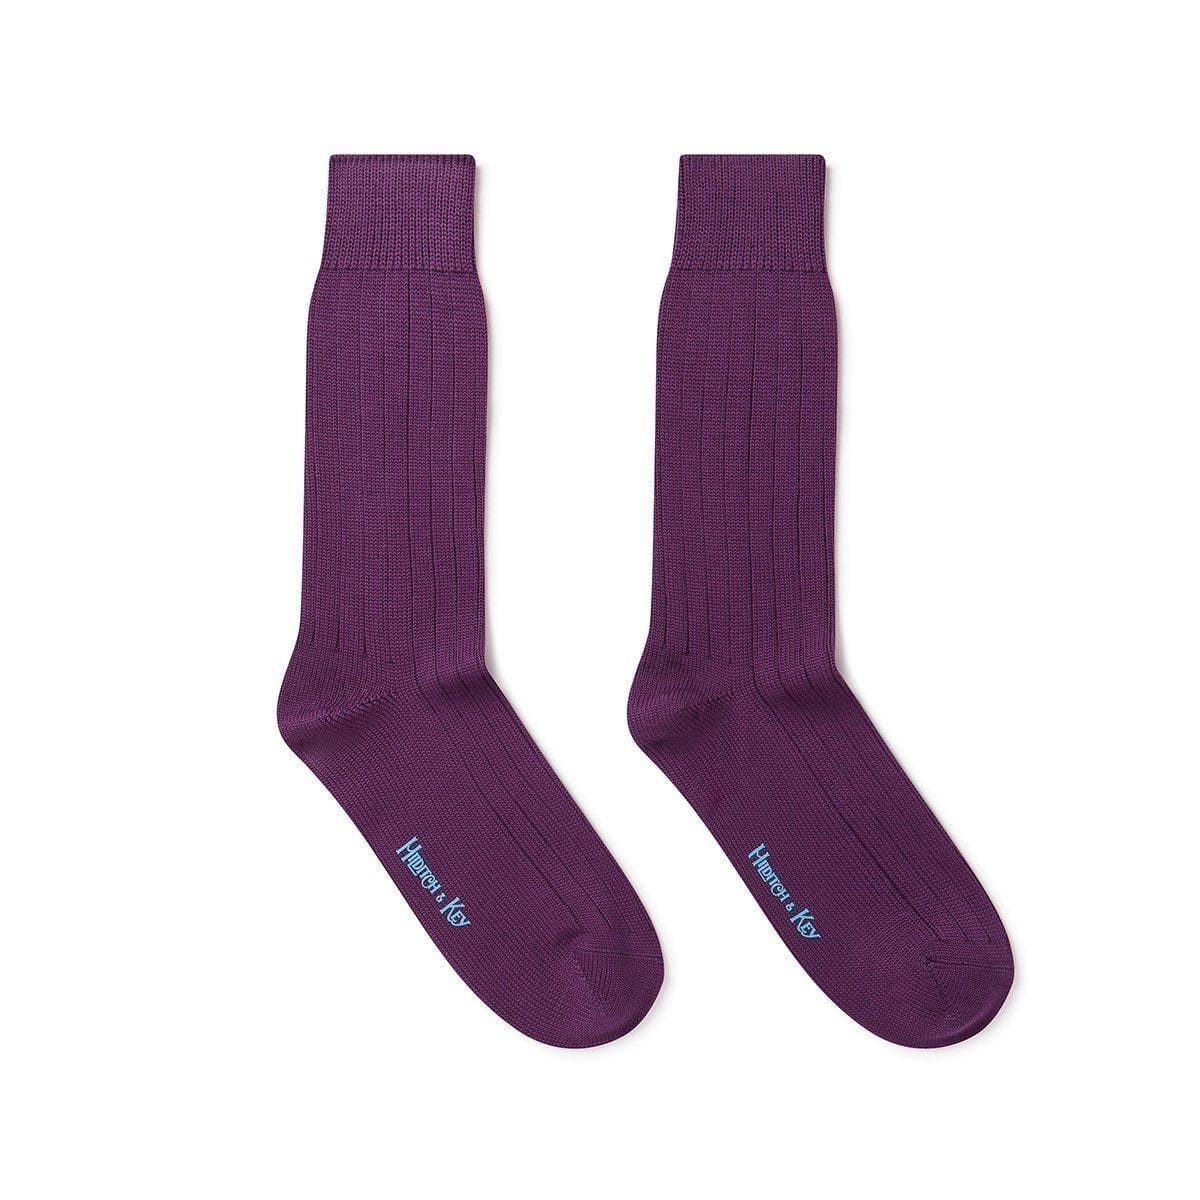 Short Purple Heavy Sports Wool Socks